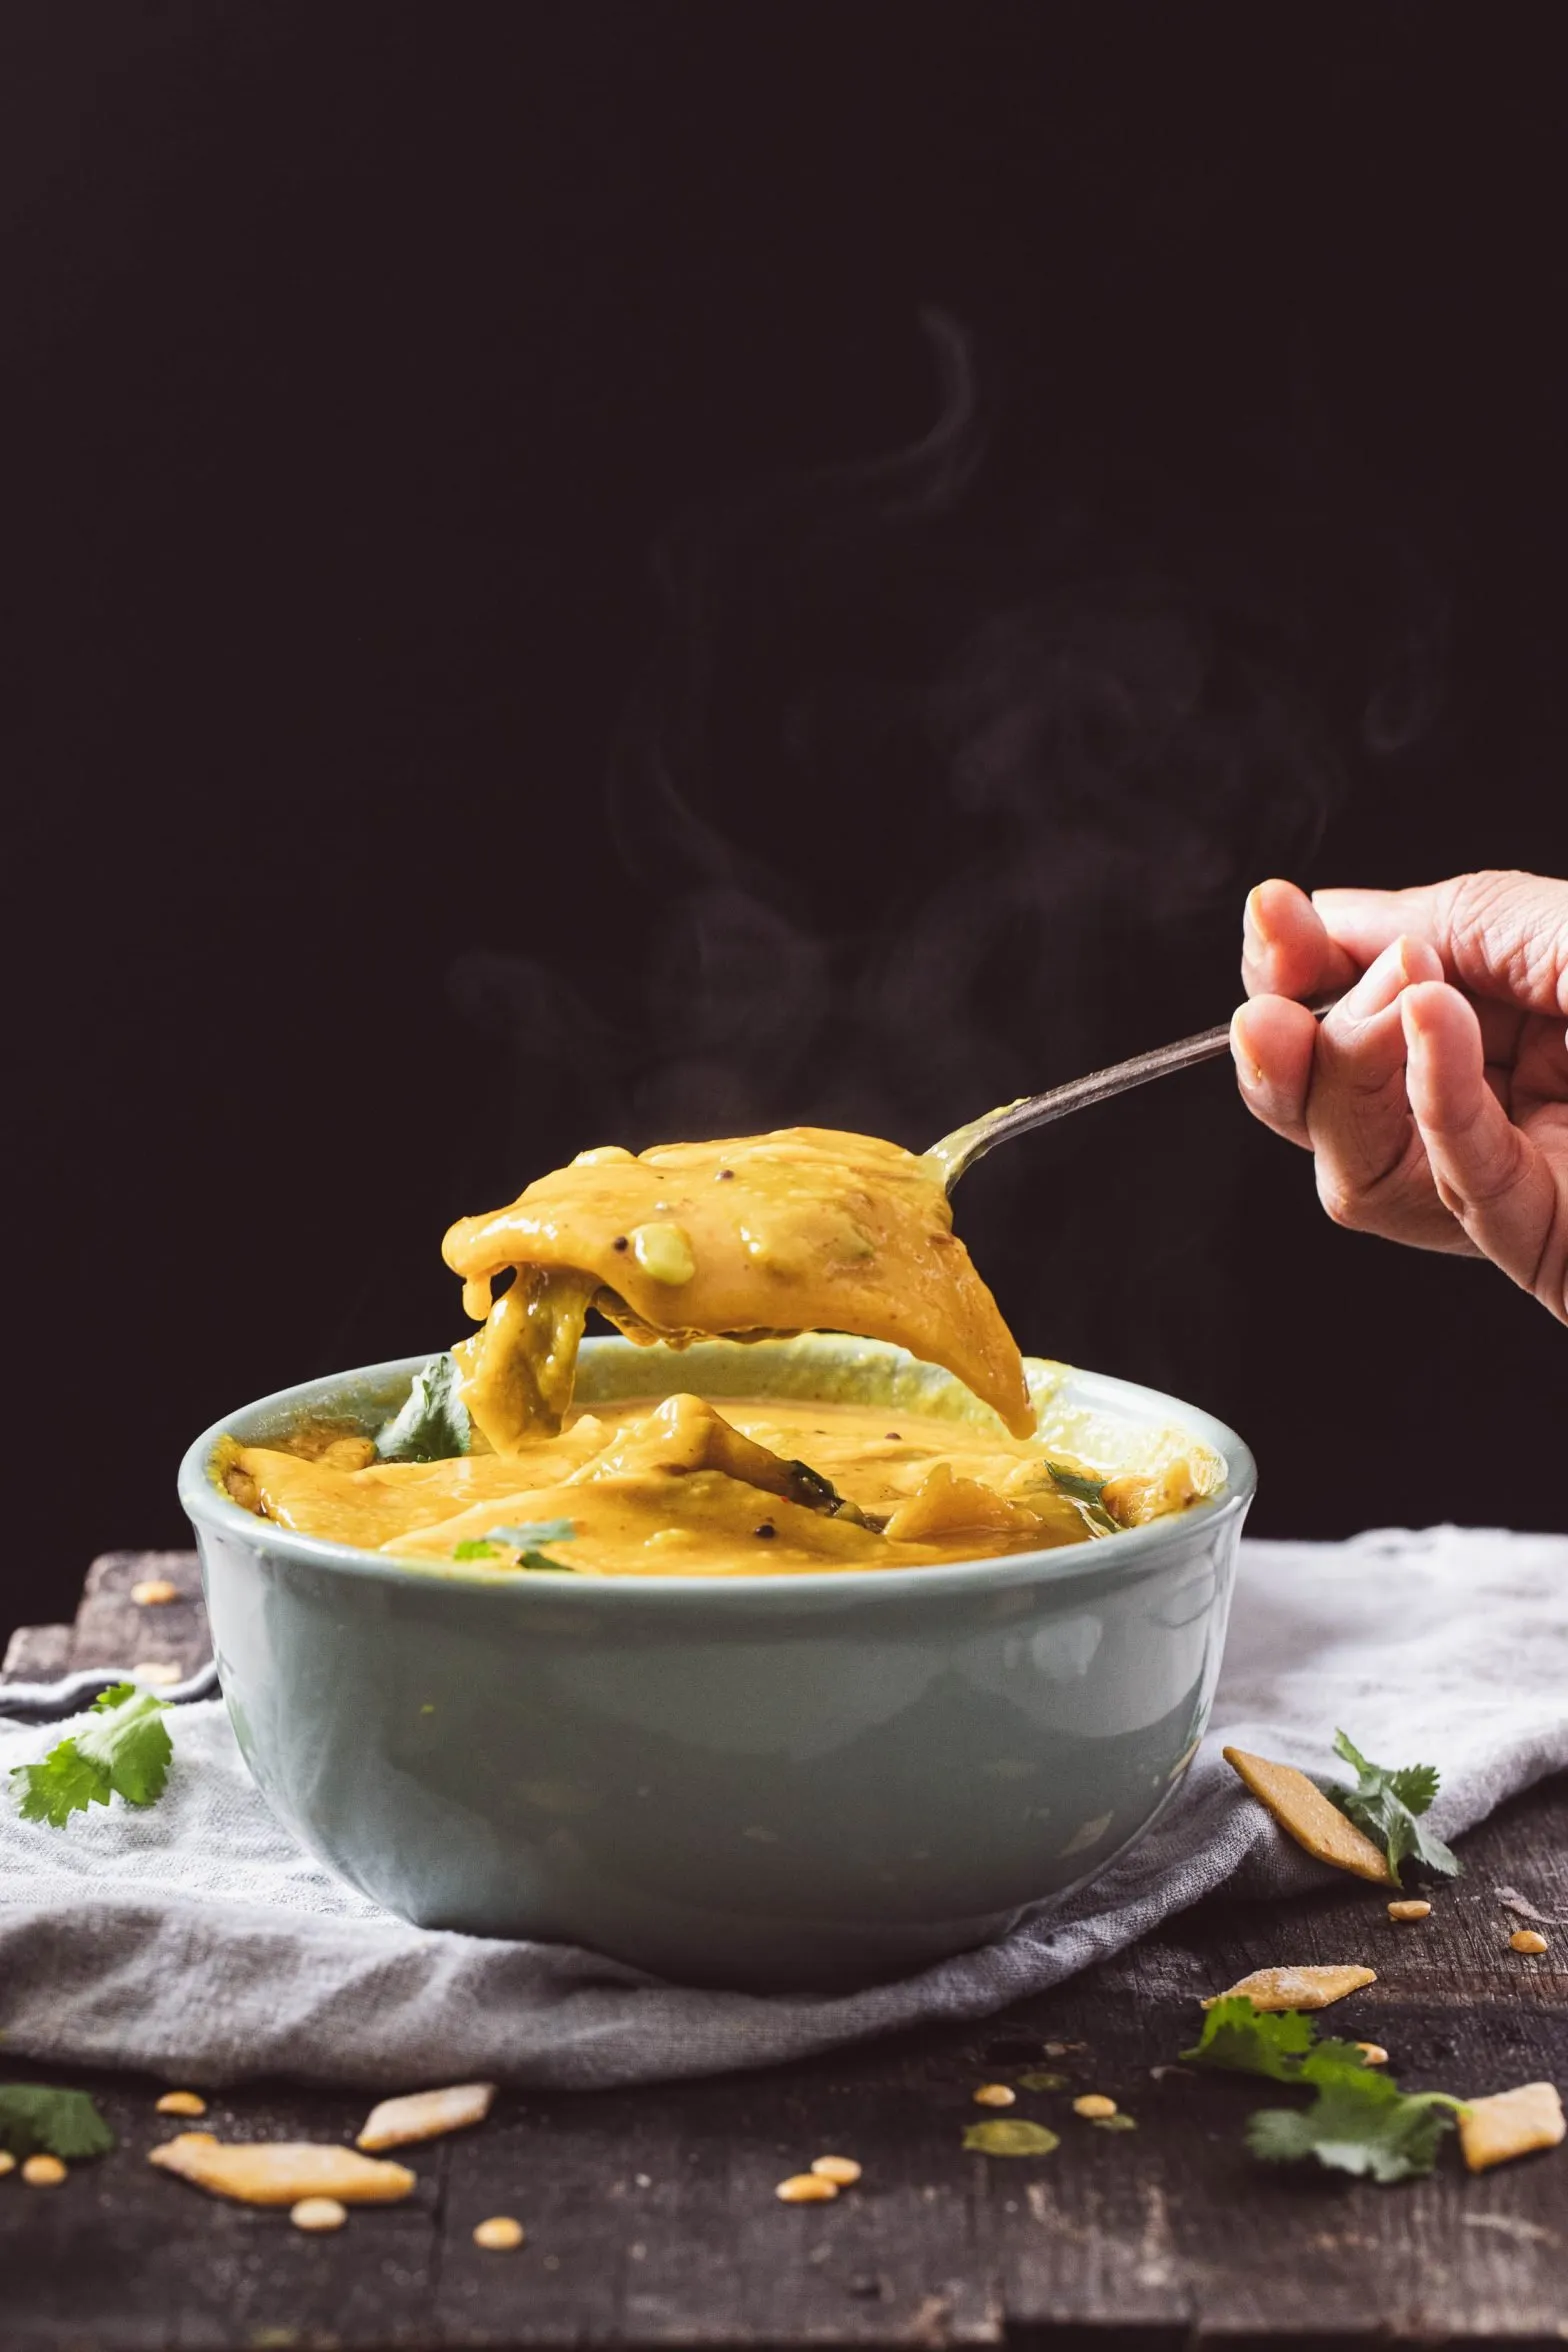 Authentic Gujarati Dal Dhokli | Lentil Soup with Dumplings